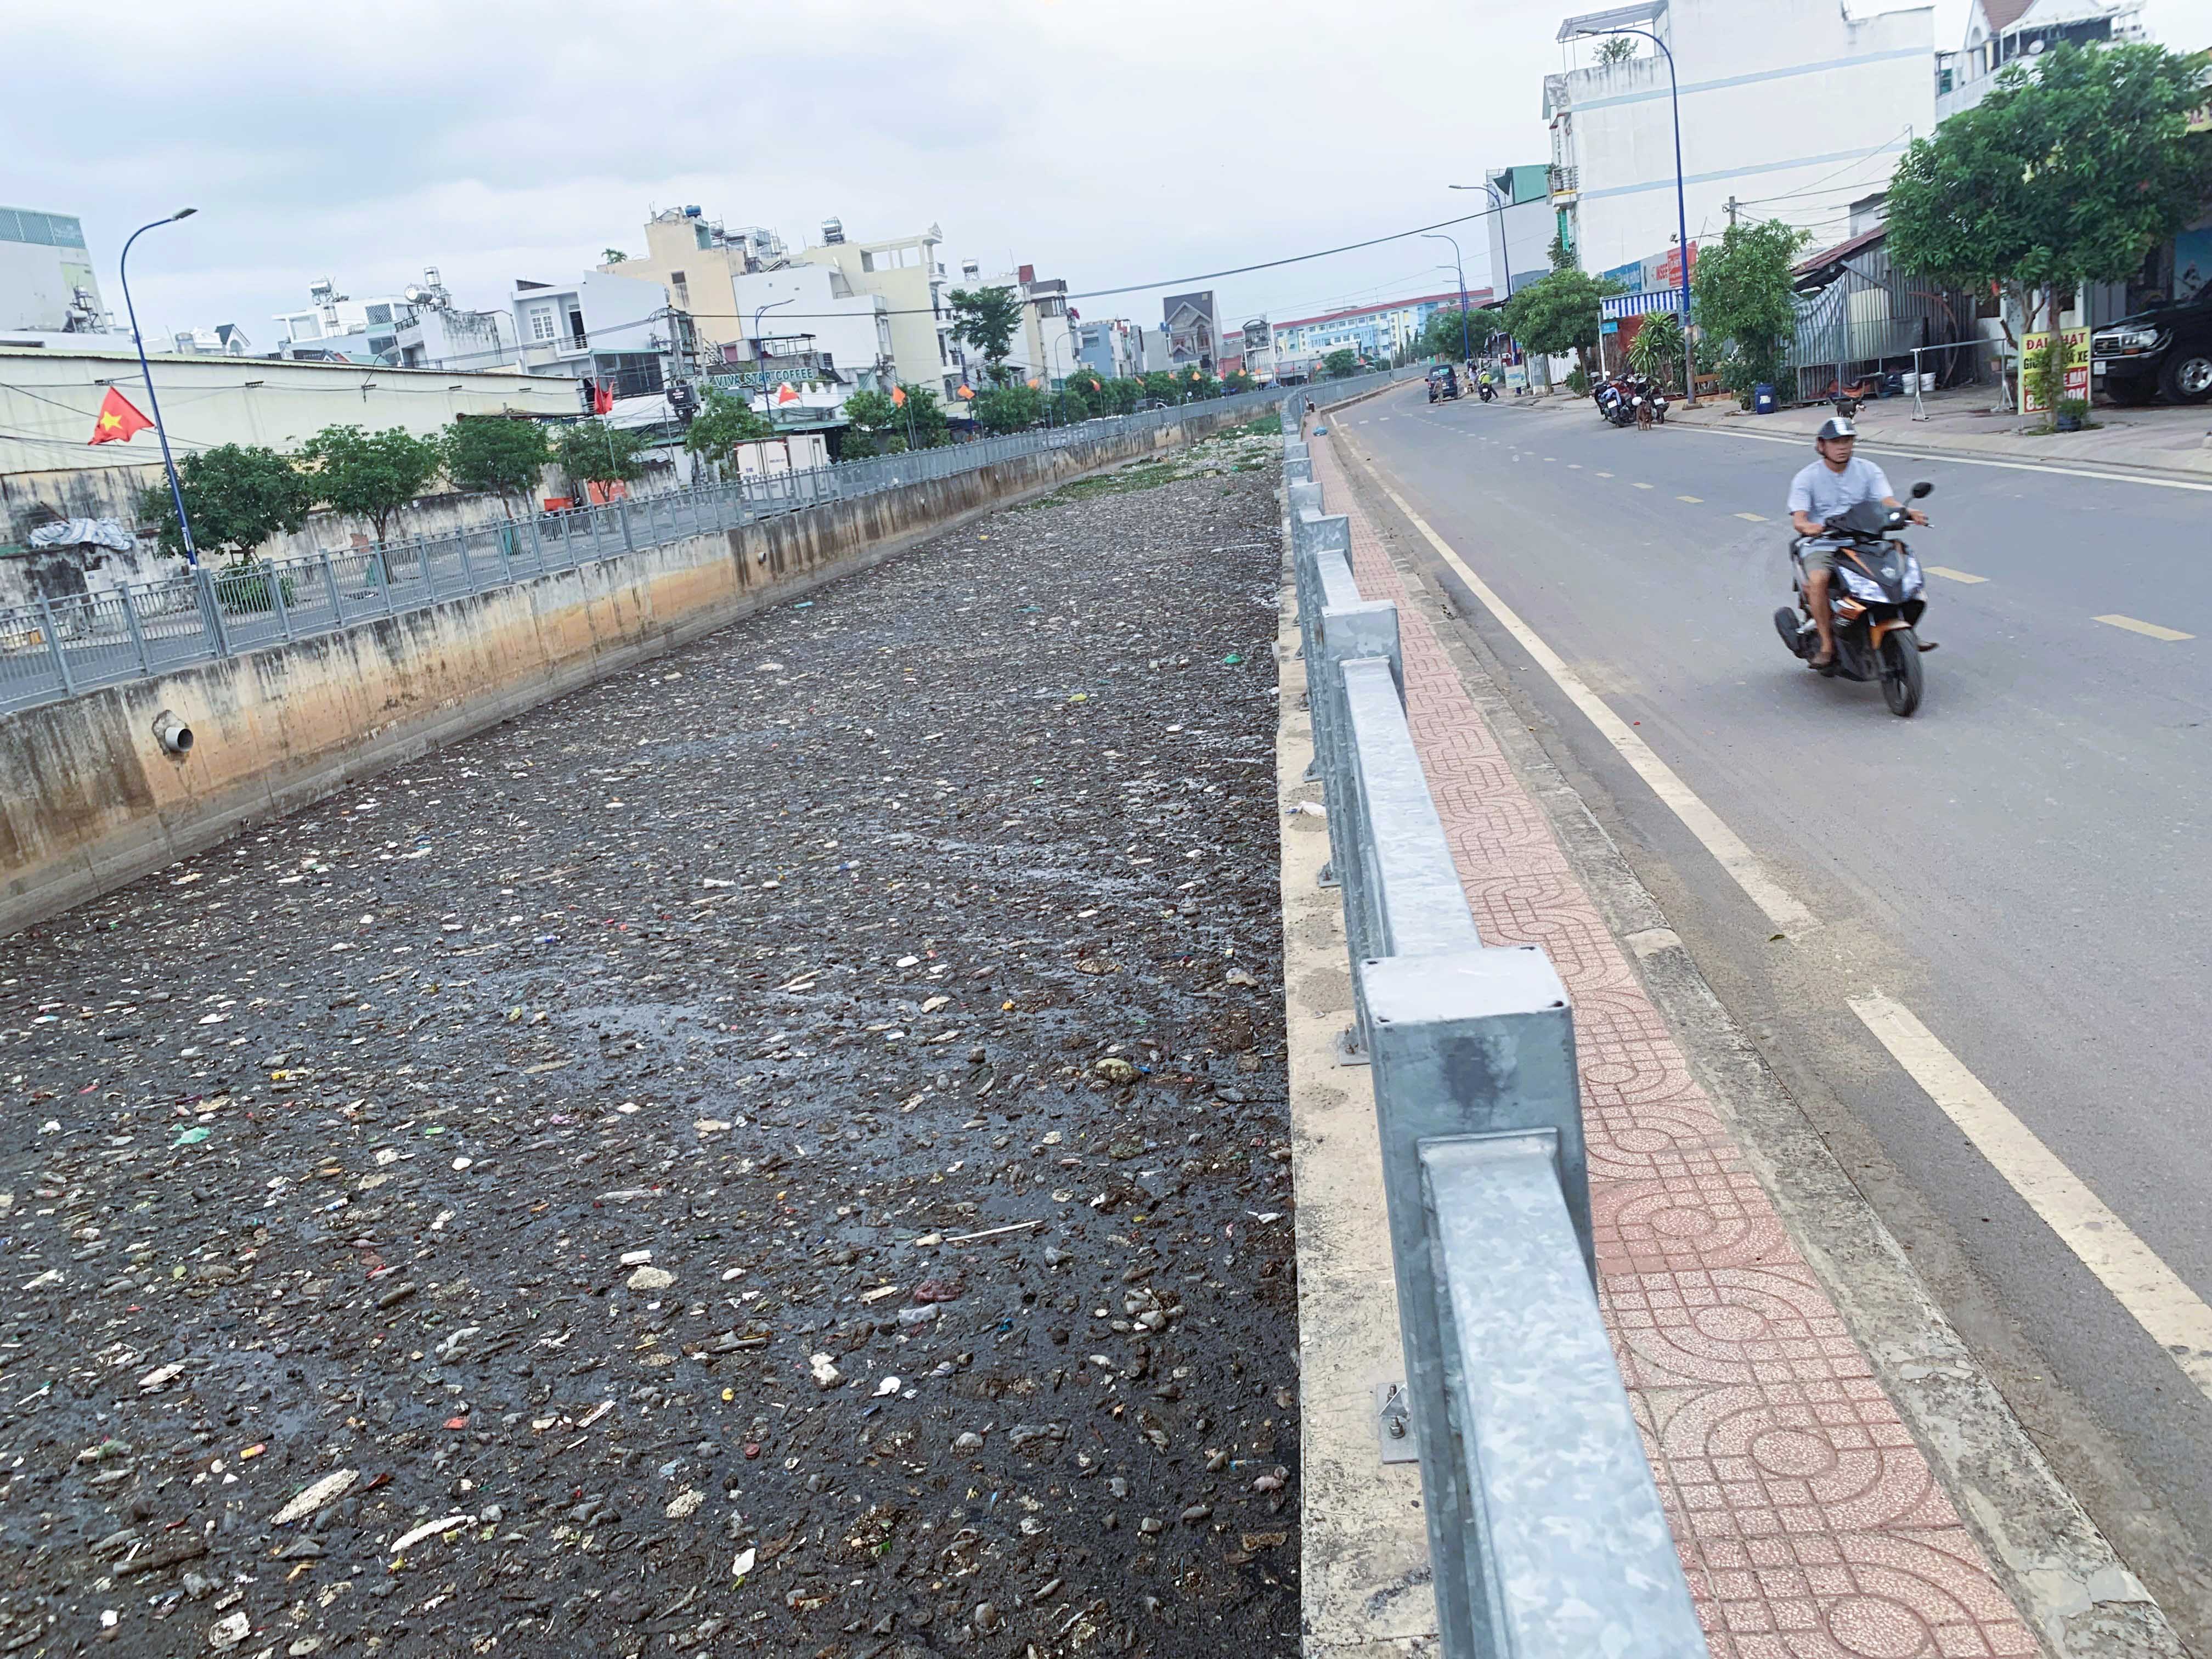 Dự án đầu tư cải tạo kênh Nước Đen (quận Bình Tân, TP.HCM) được triển khai và hoàn thành từ năm 2022. Tuy nhiên, sau 2 năm cải tạo, kênh Nước Đen vẫn chưa thực sự thay đổi, nguy cơ tái ô nhiễm do rác thải sinh hoạt, lục bình... ùn ứ dưới dòng kênh.